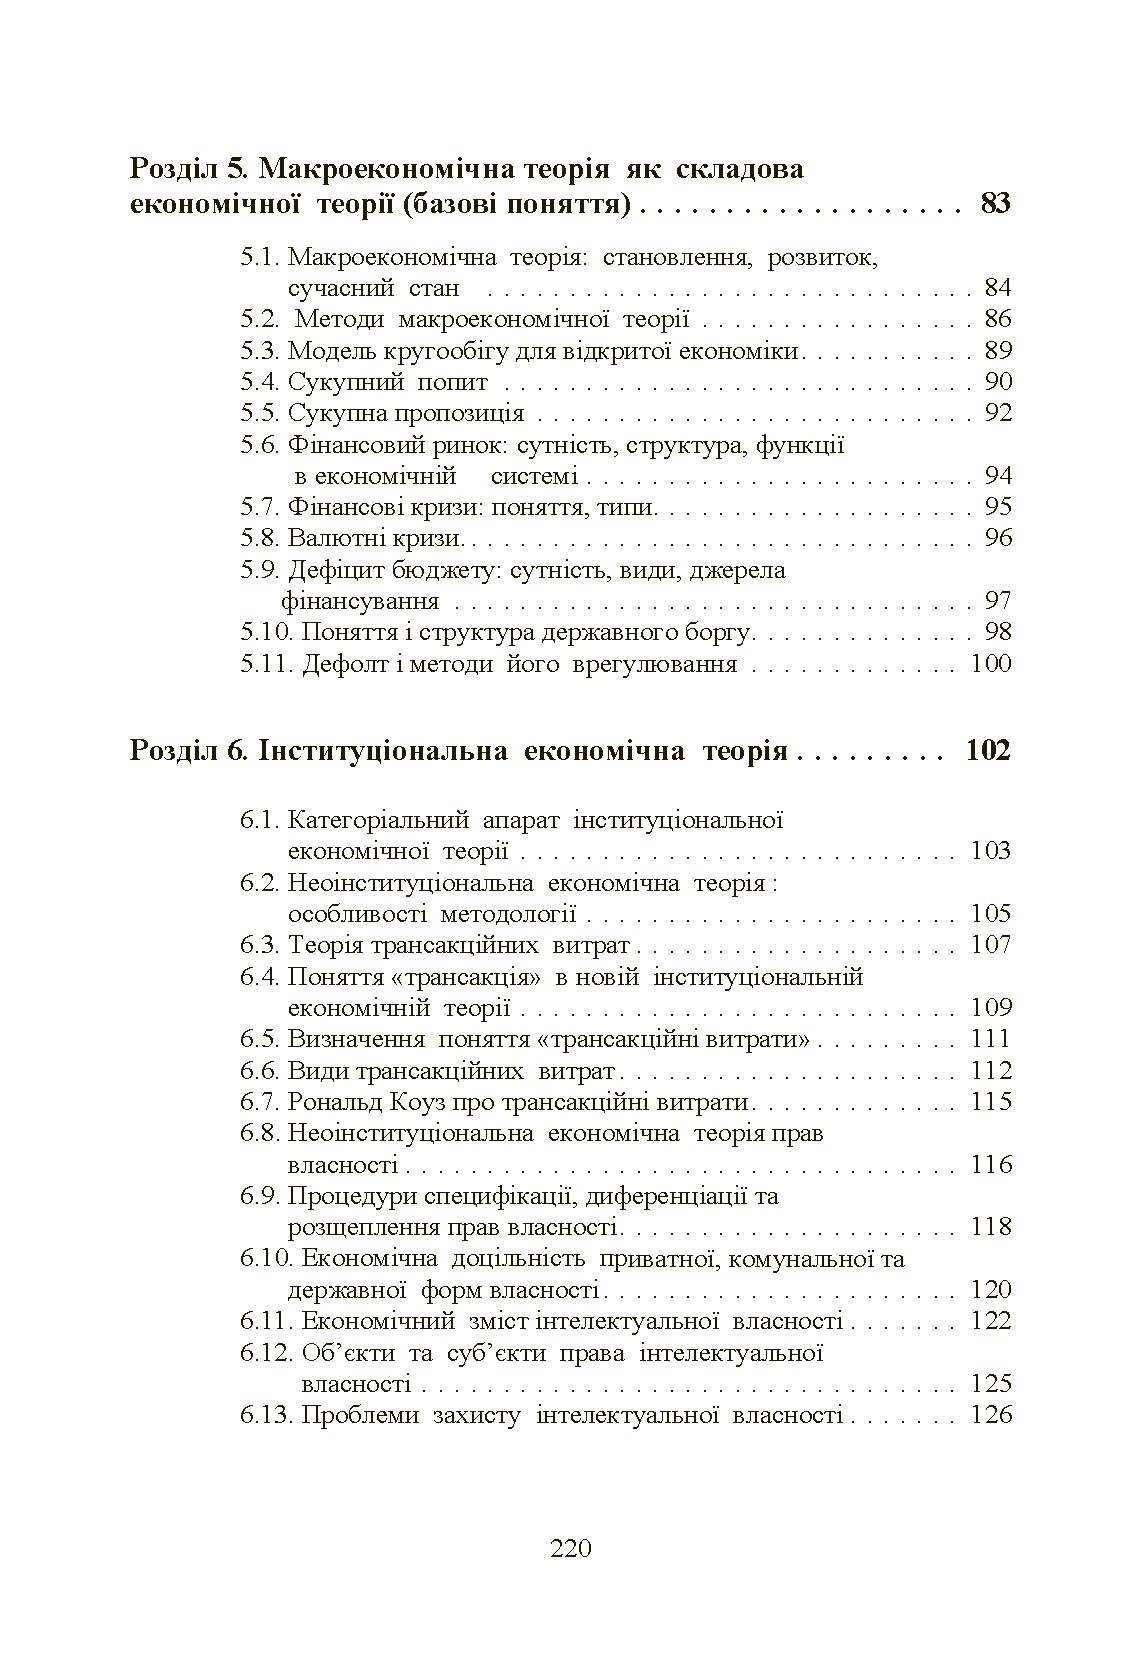 Економічна теорія. Касьяненко Л.М.  (2019 год). Автор — Касьяненко Л.М.. 